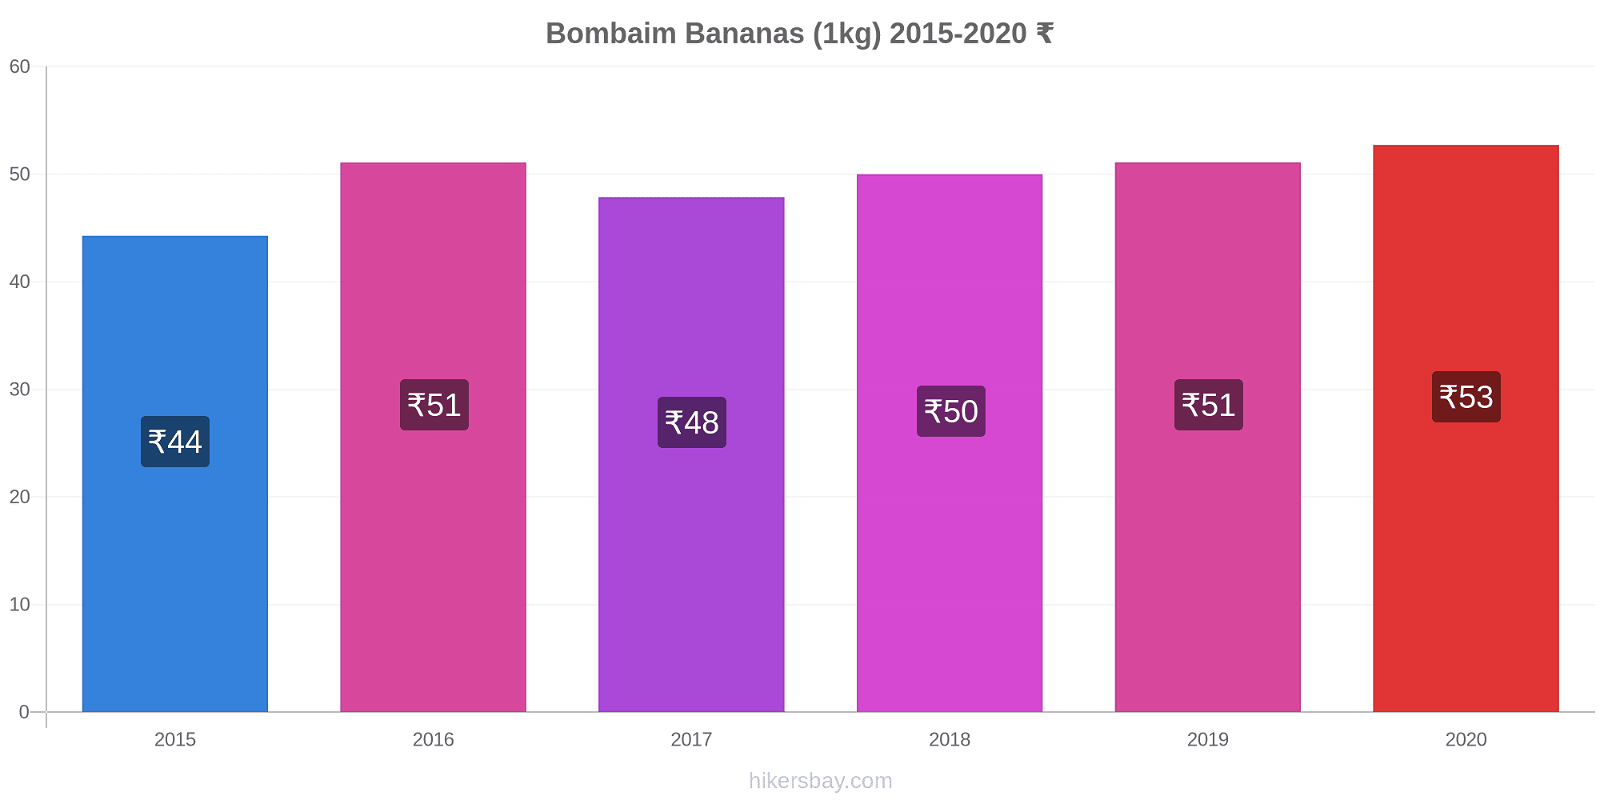 Bombaim variação de preço Banana (1kg) hikersbay.com